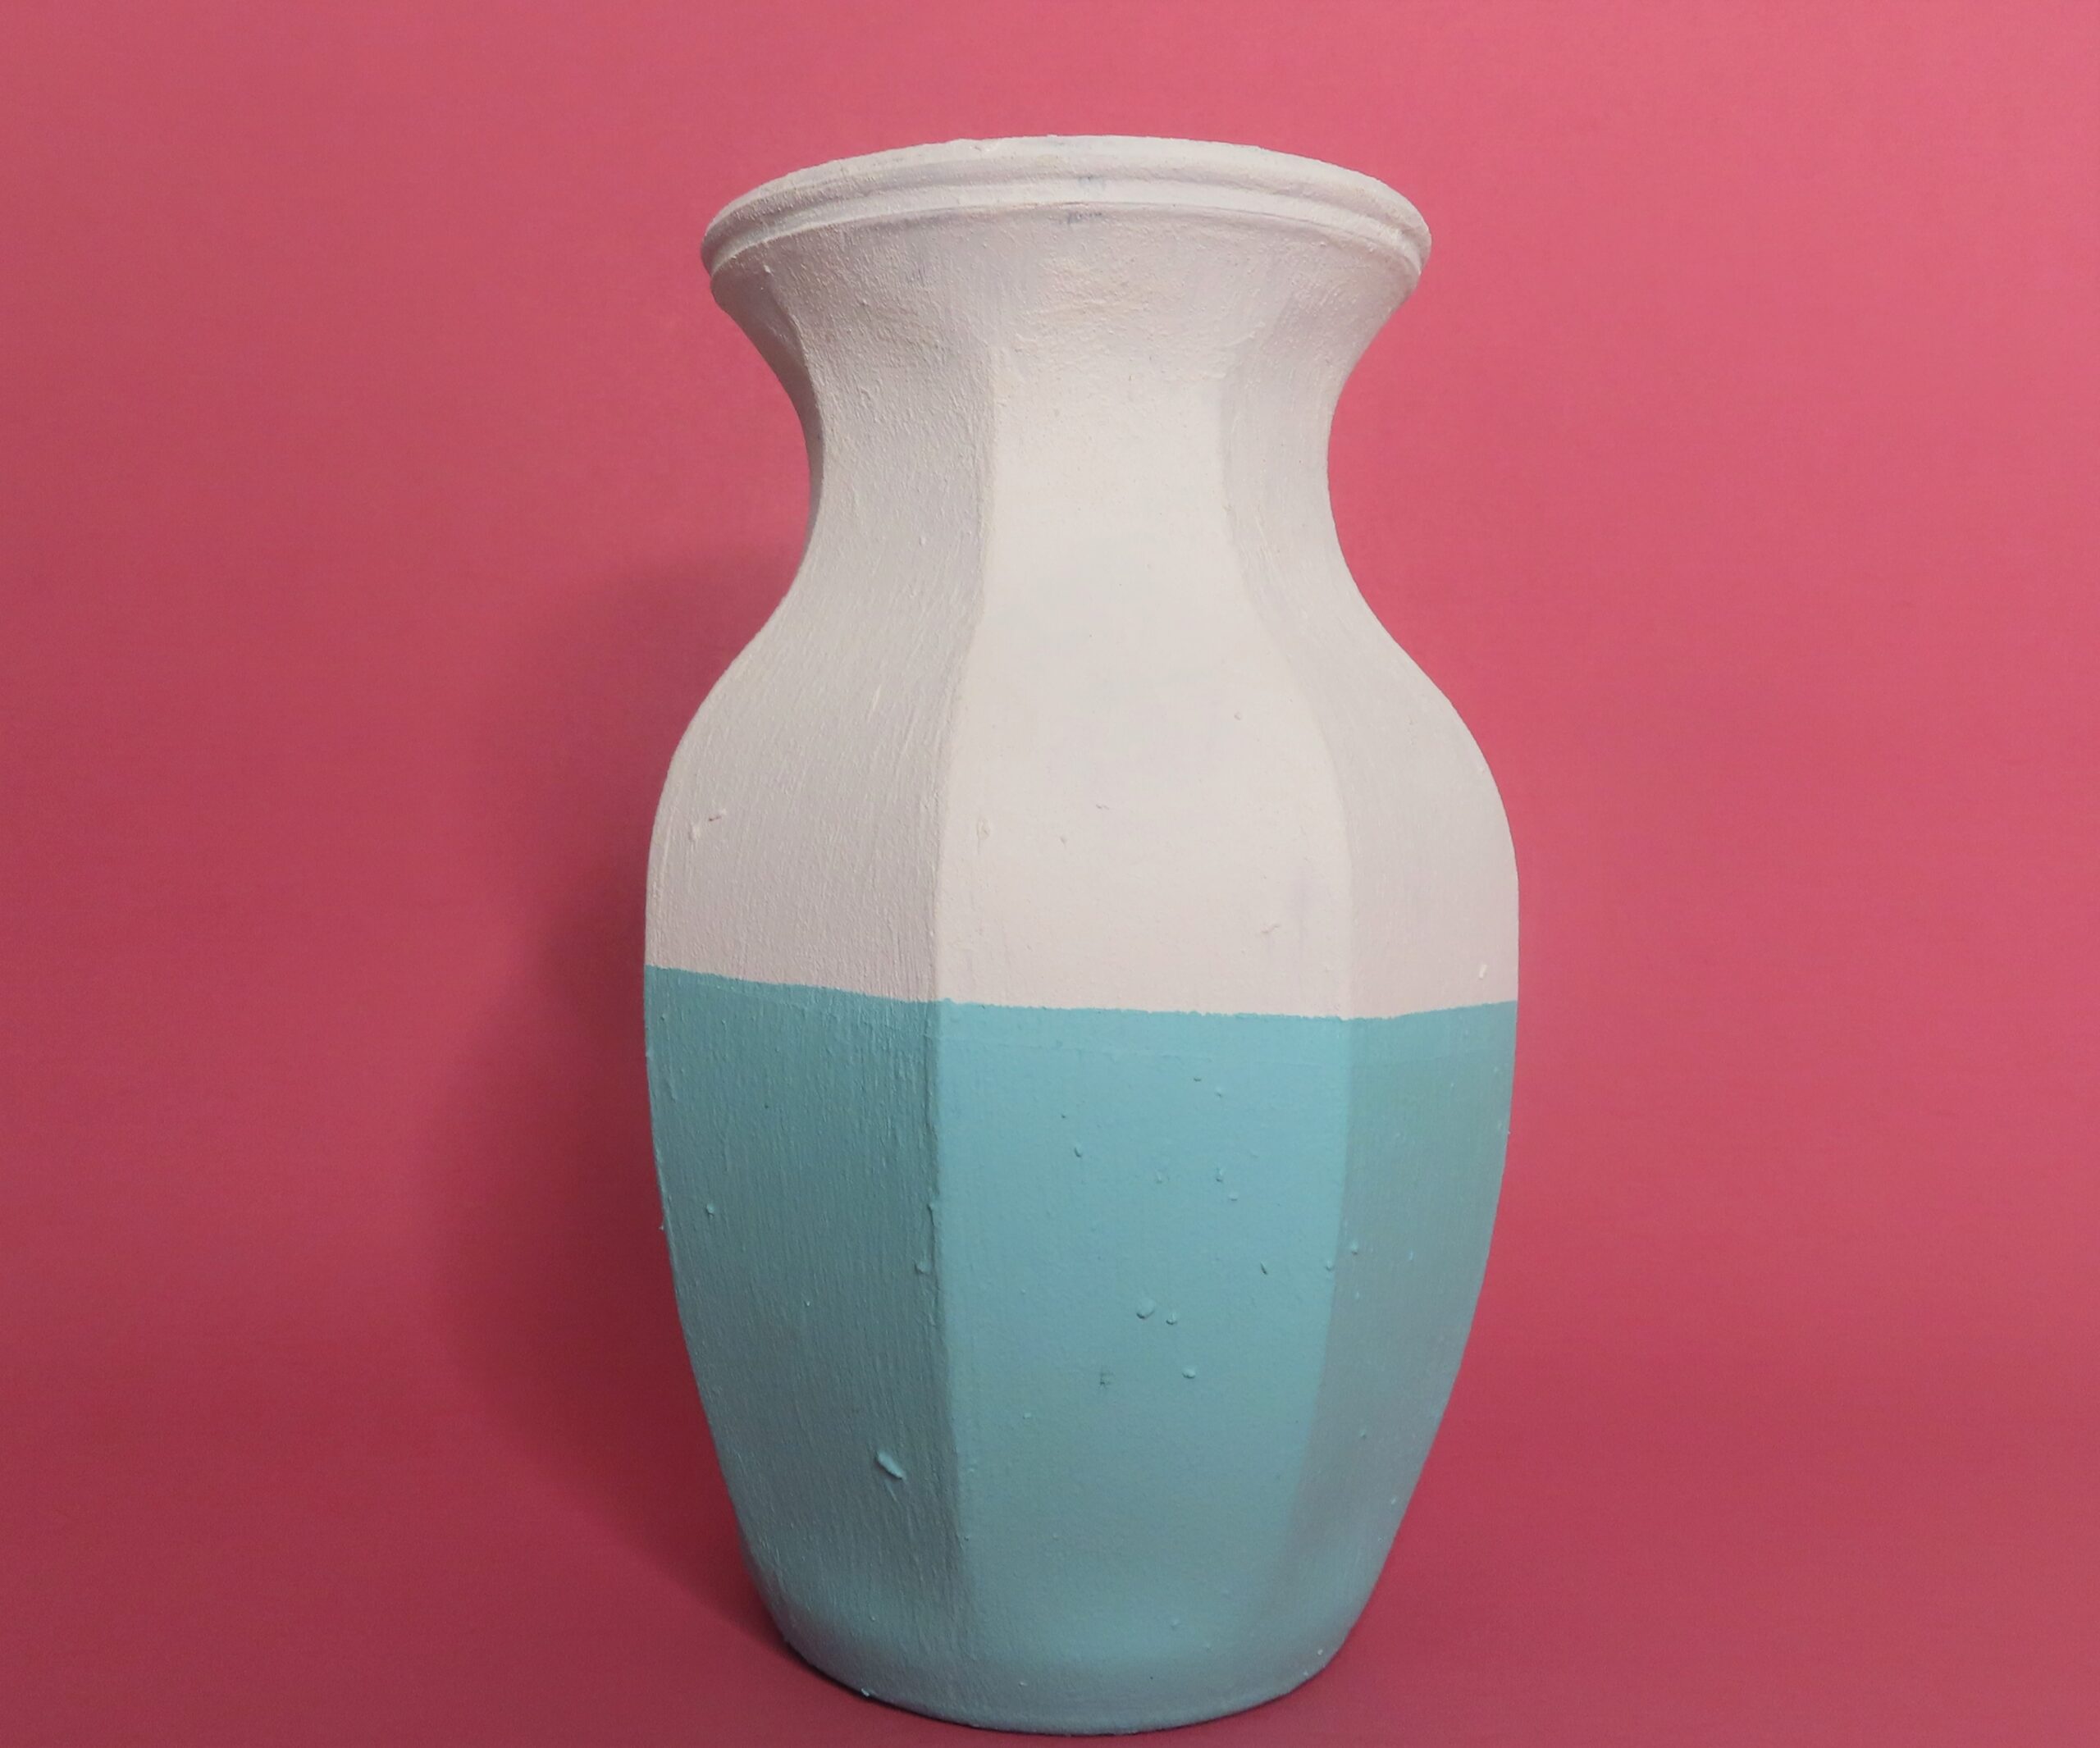 Amazing Acrylic Paint and Baking Soda Vase Makeover